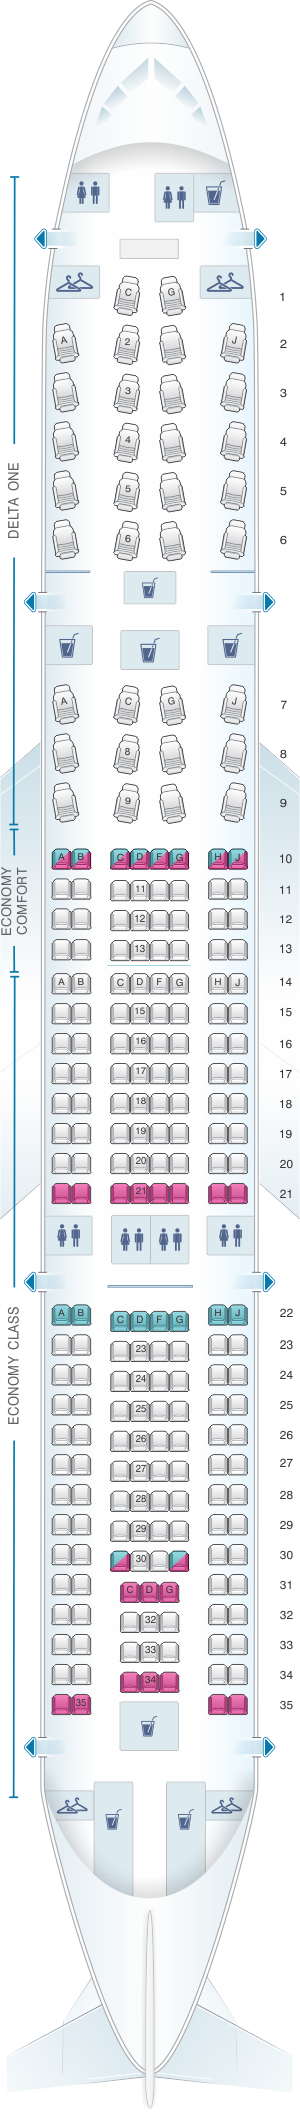 Plan De Cabine Delta Air Lines Airbus A330 200 332 Seatmaestrofr